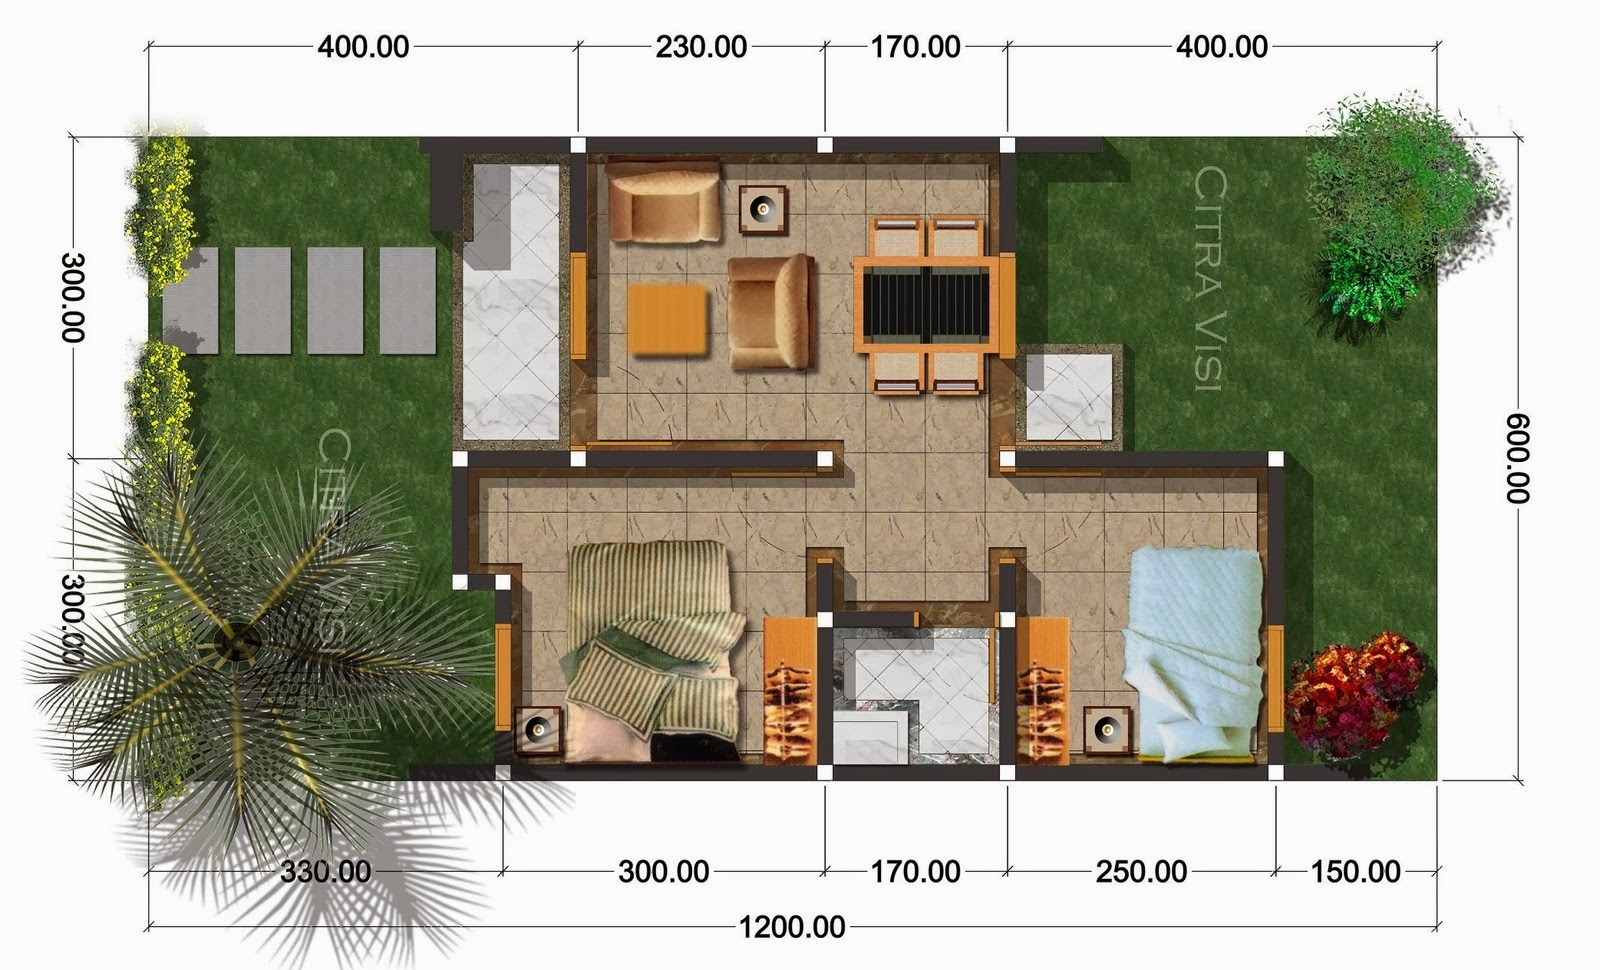 Denah Rumah Minimalis 3 Kamar Ukuran 7x9 Expo Desain Rumah